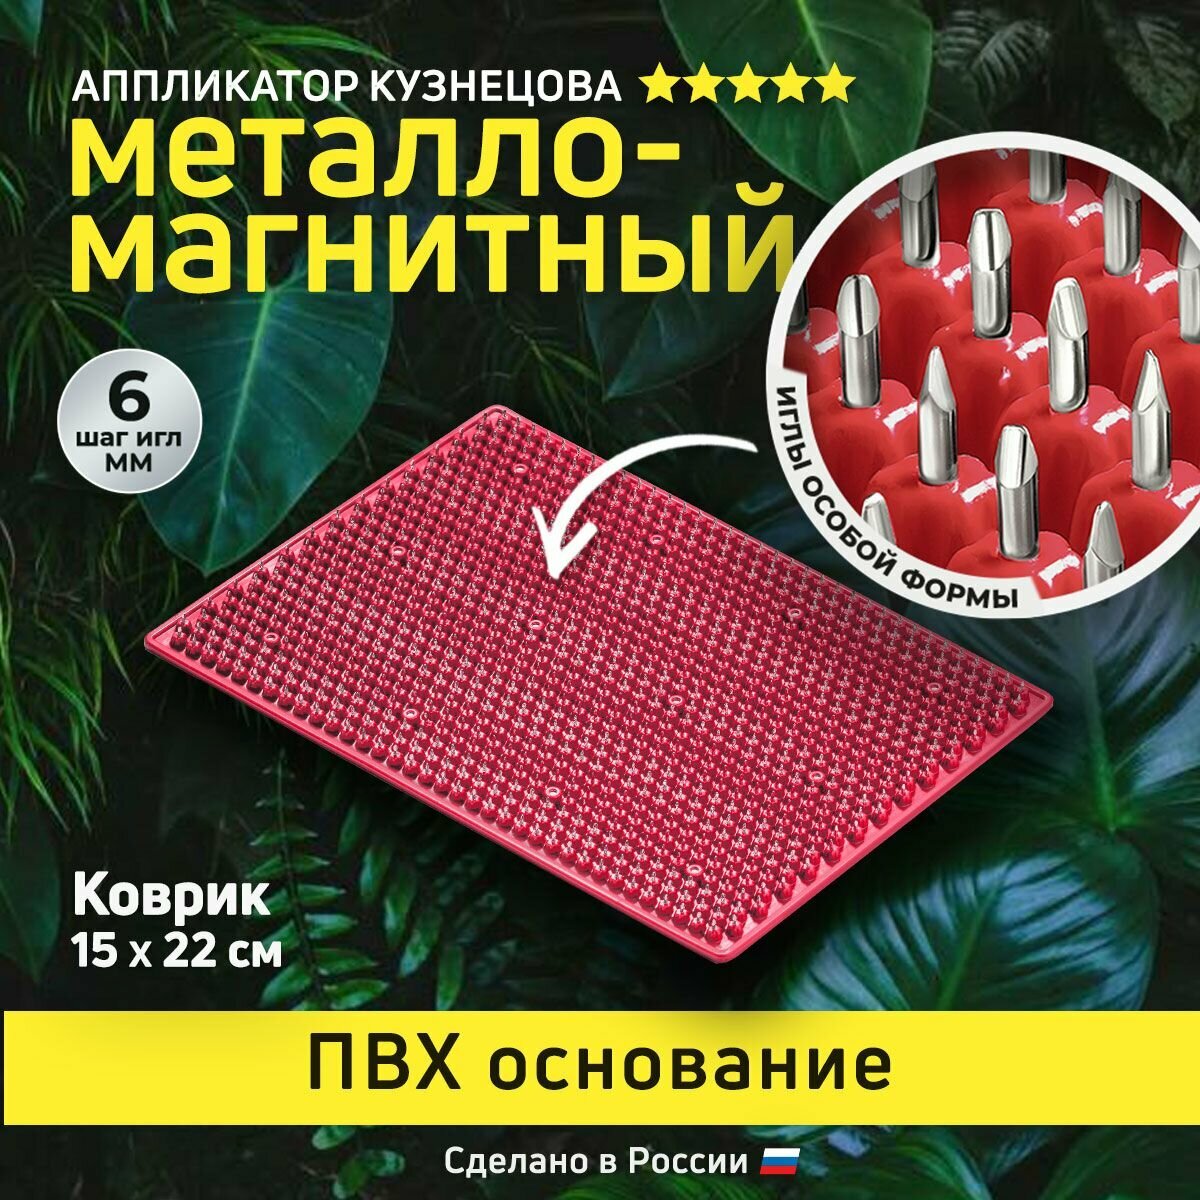 Аппликатор Кузнецова. Игольчатый коврик с металлическими иглами. Массажер без подложки 15 х 22 см, красный